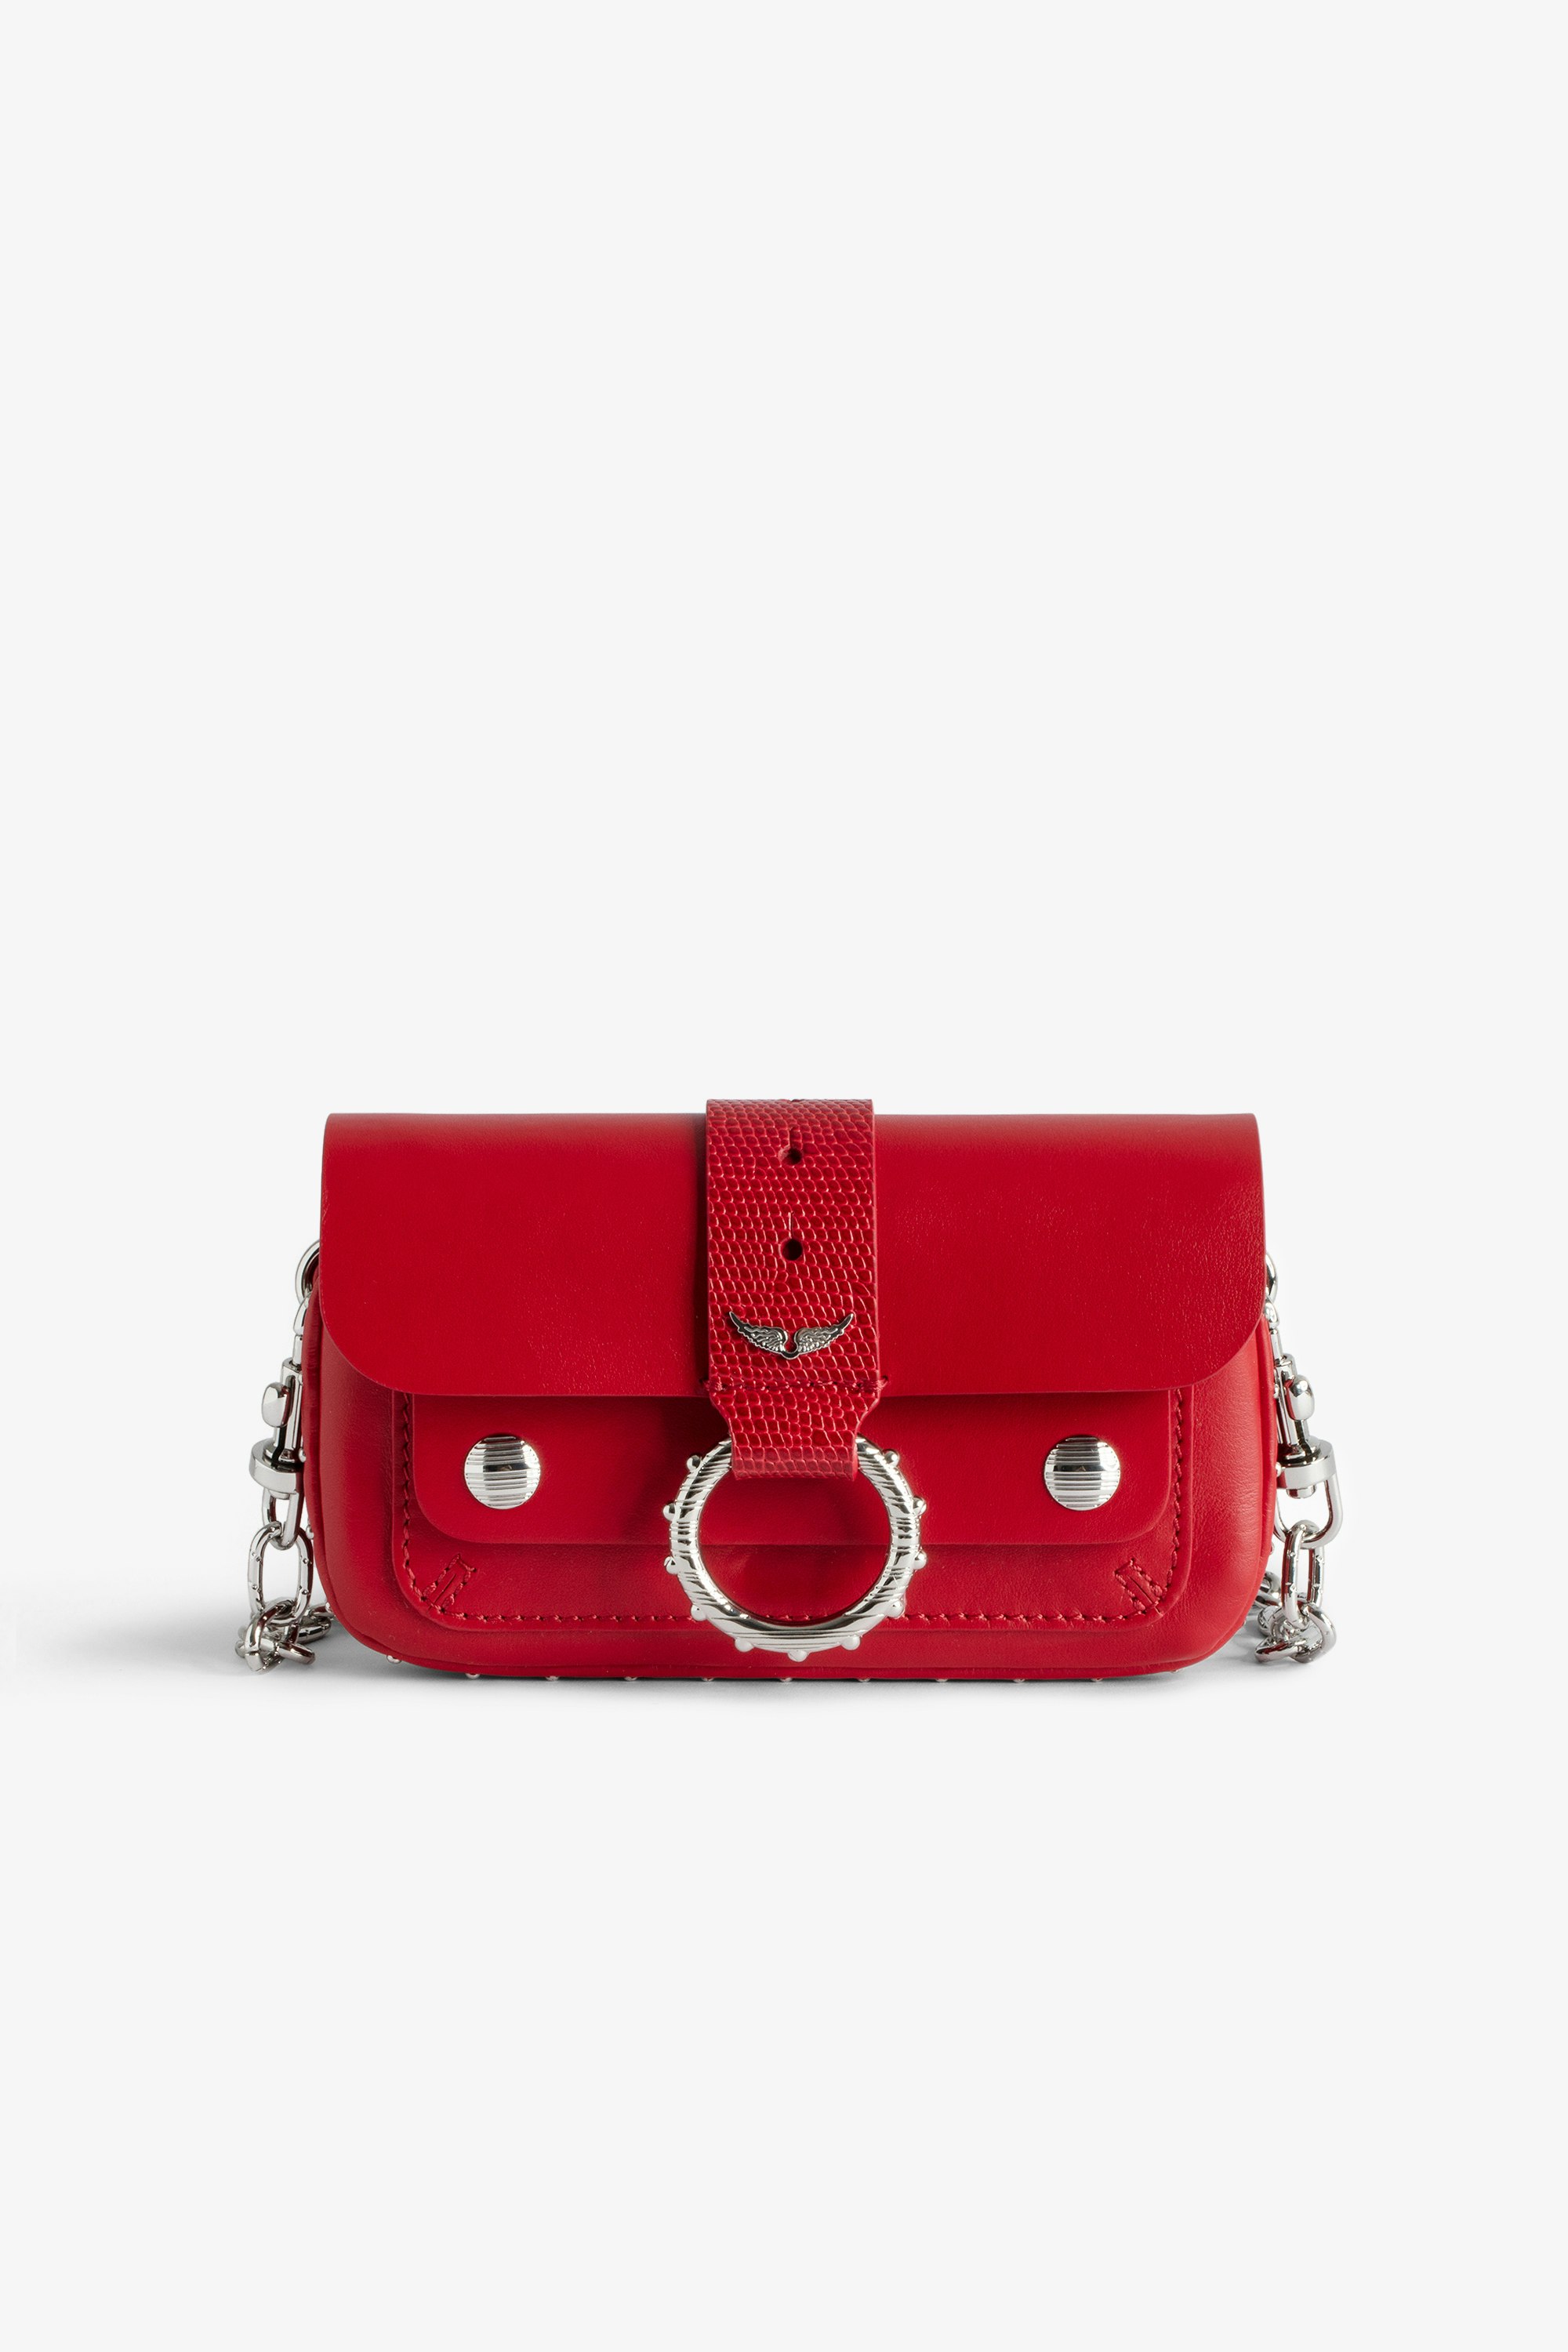 Sac Kate Wallet Mini sac en cuir lisse rouge à chaîne en métal et passant en cuir embossé effet iguane.